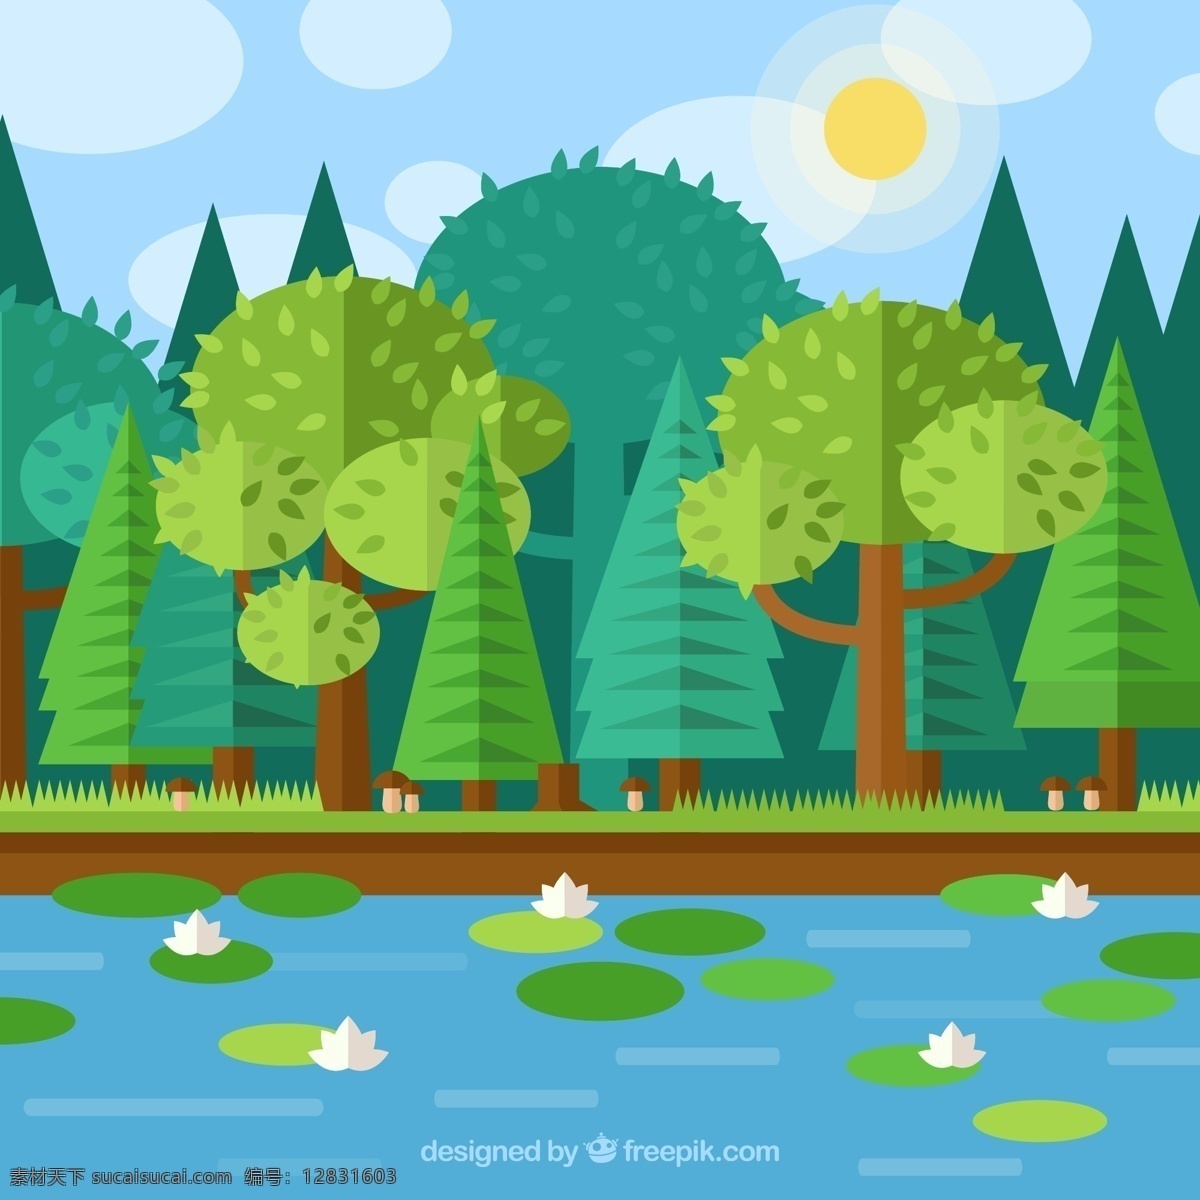 扁平化 荷花 池 树木 风景 矢量 荷花池 荷叶 树林 风景插画 太阳 矢量素材 小河